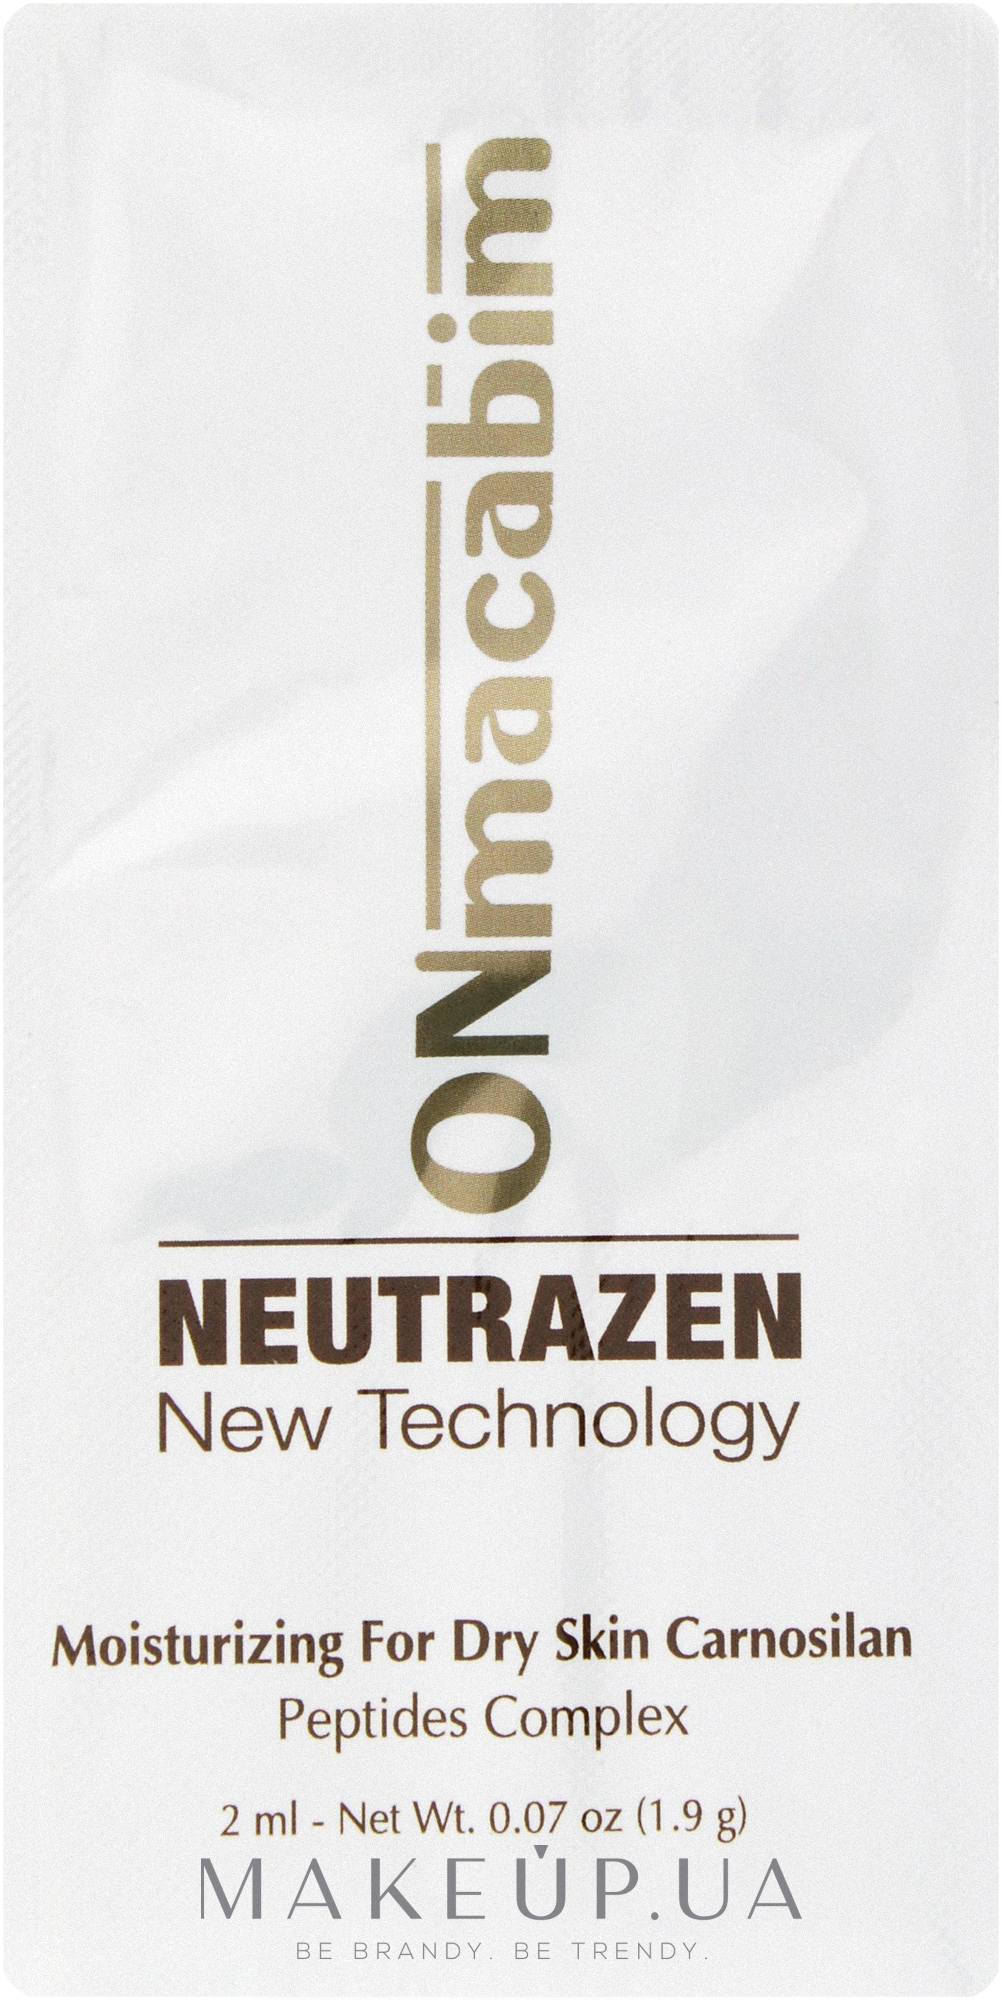 Денний зволожувальний крем для сухої шкіри - ONmacabim Neutrazen Carnosilan Moisturizing for Dry Skin (пробник) — фото 2ml